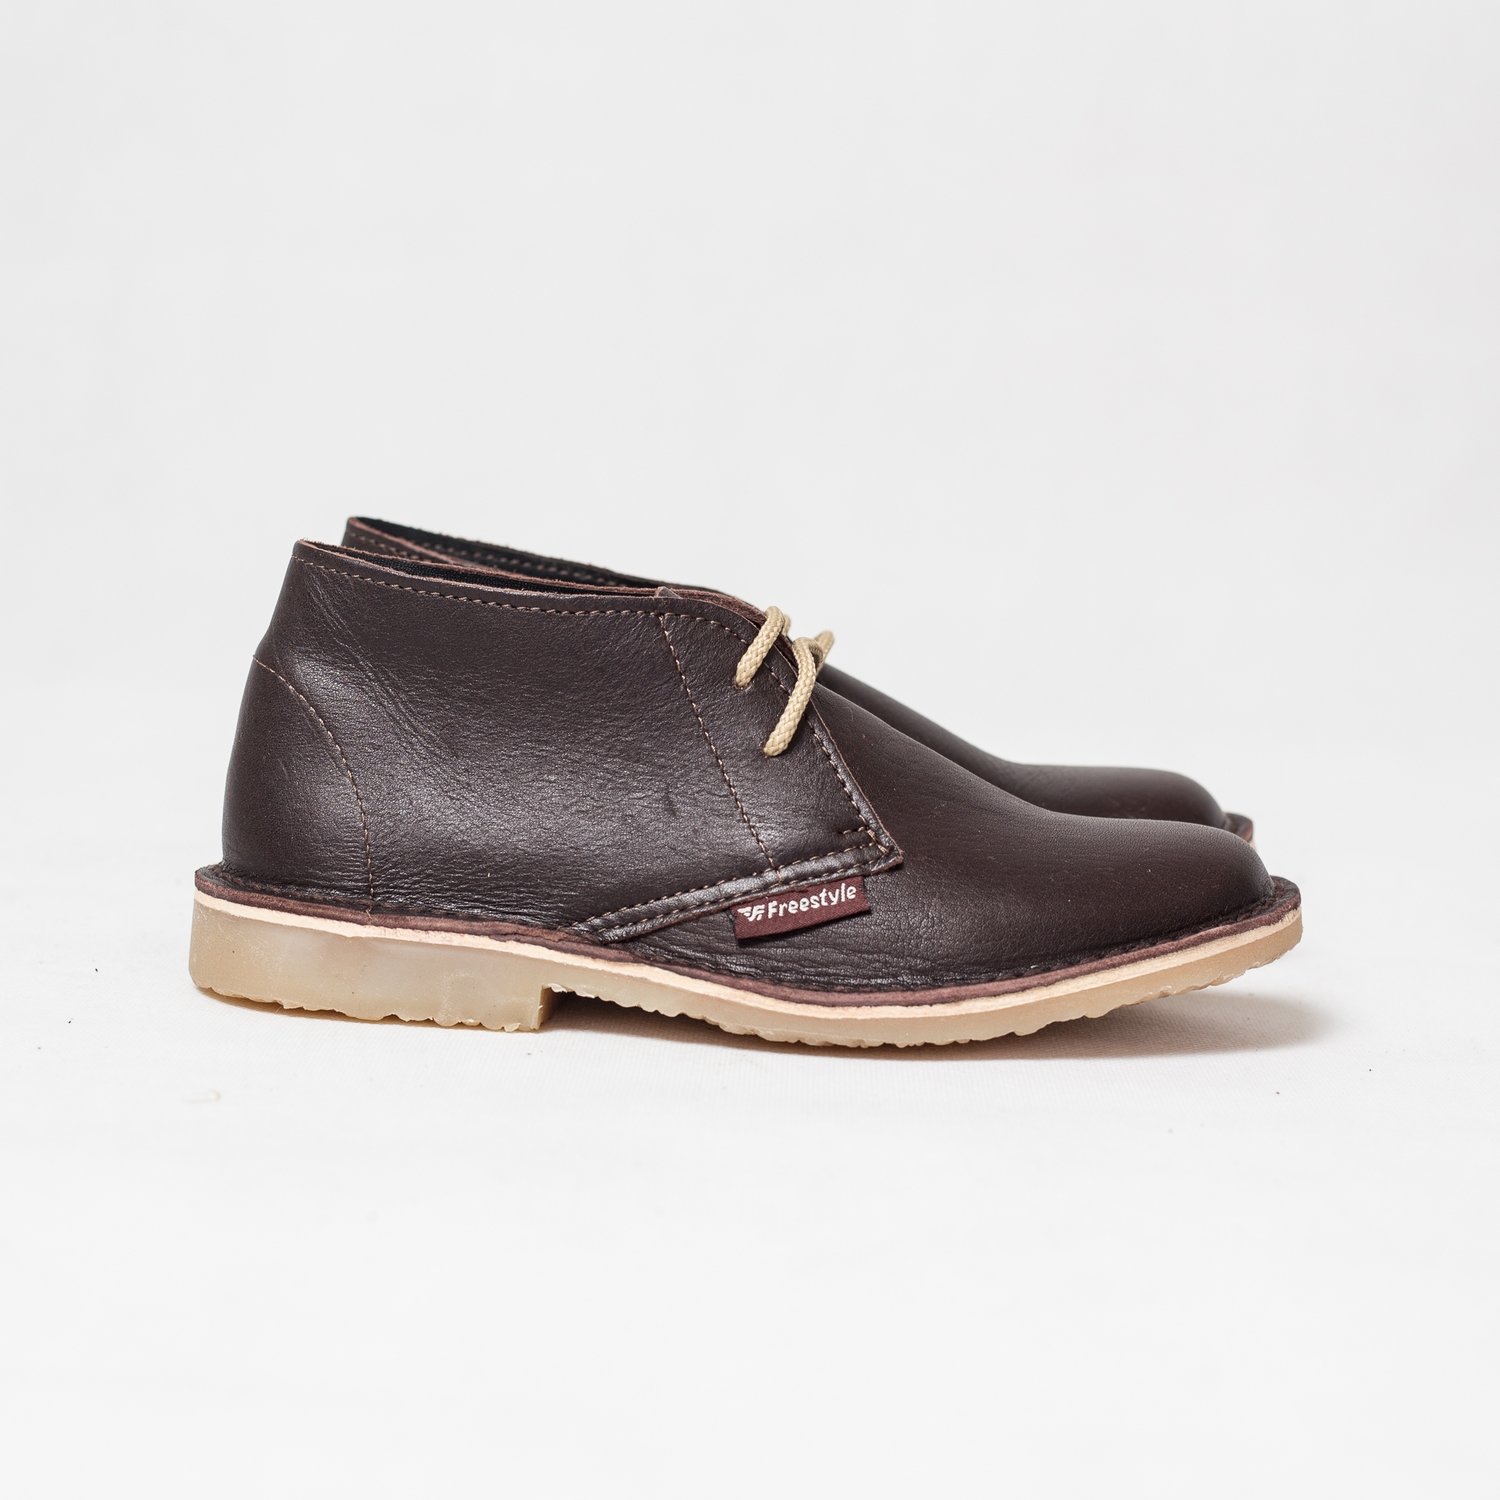 Desert Boots / Veldskoen Kudu Leather Brown